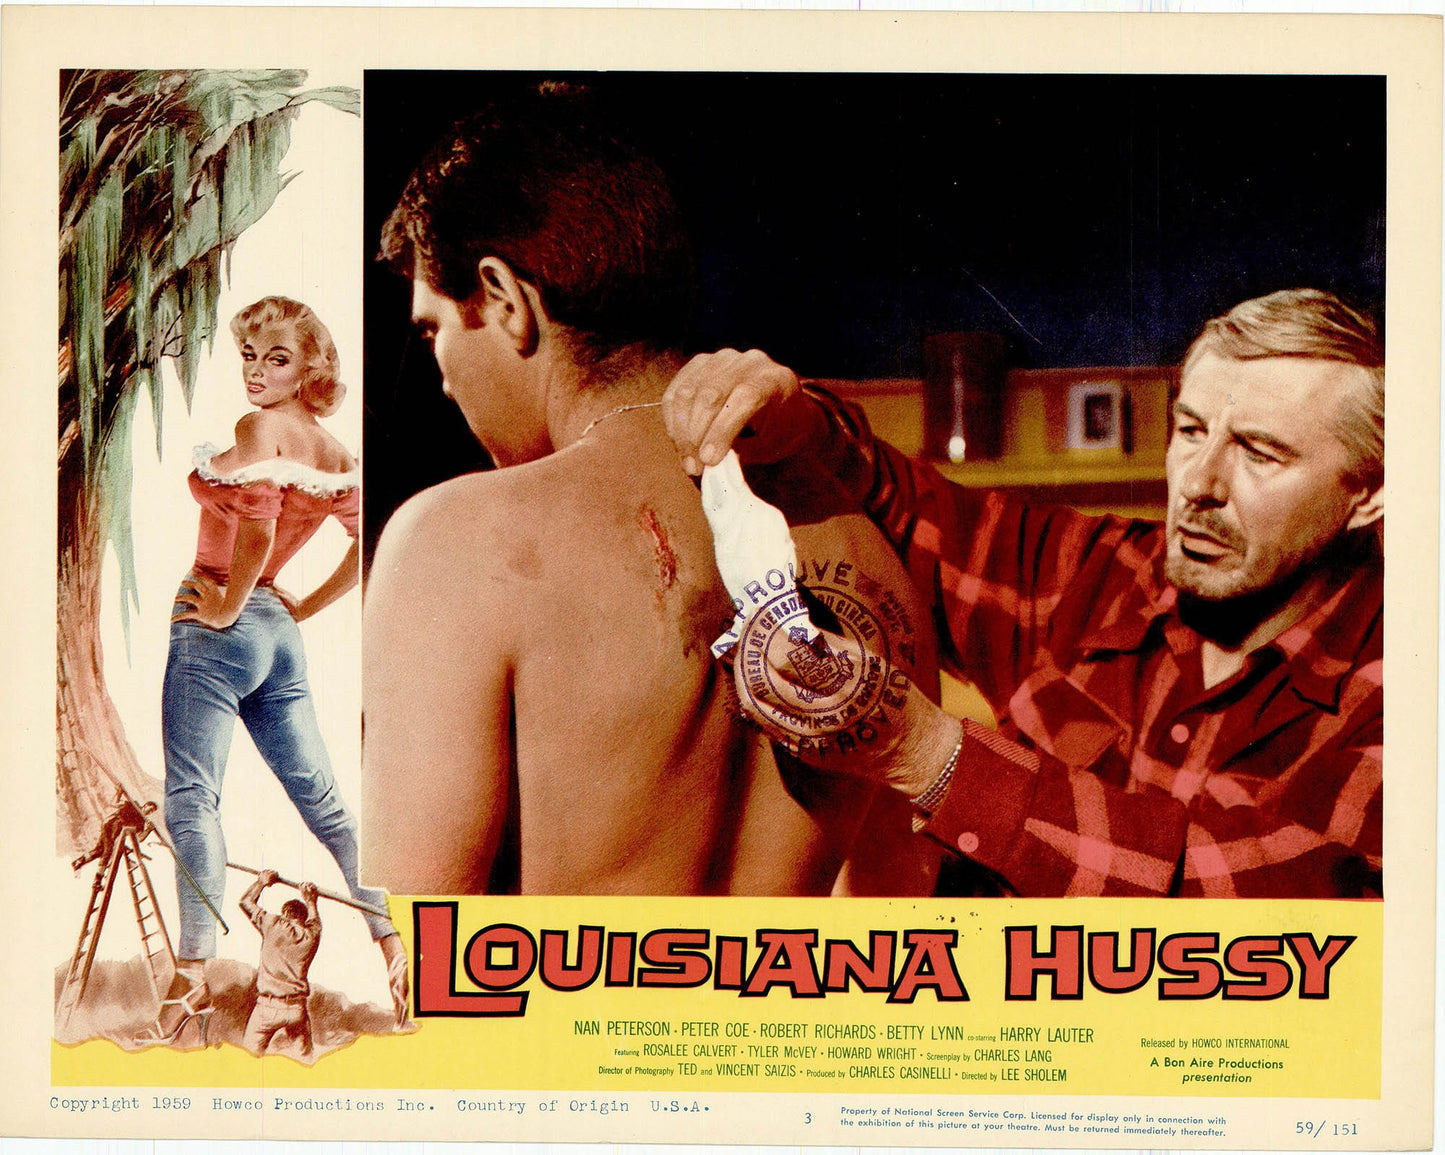 The Louisiana Hussy Movie Lobby Card